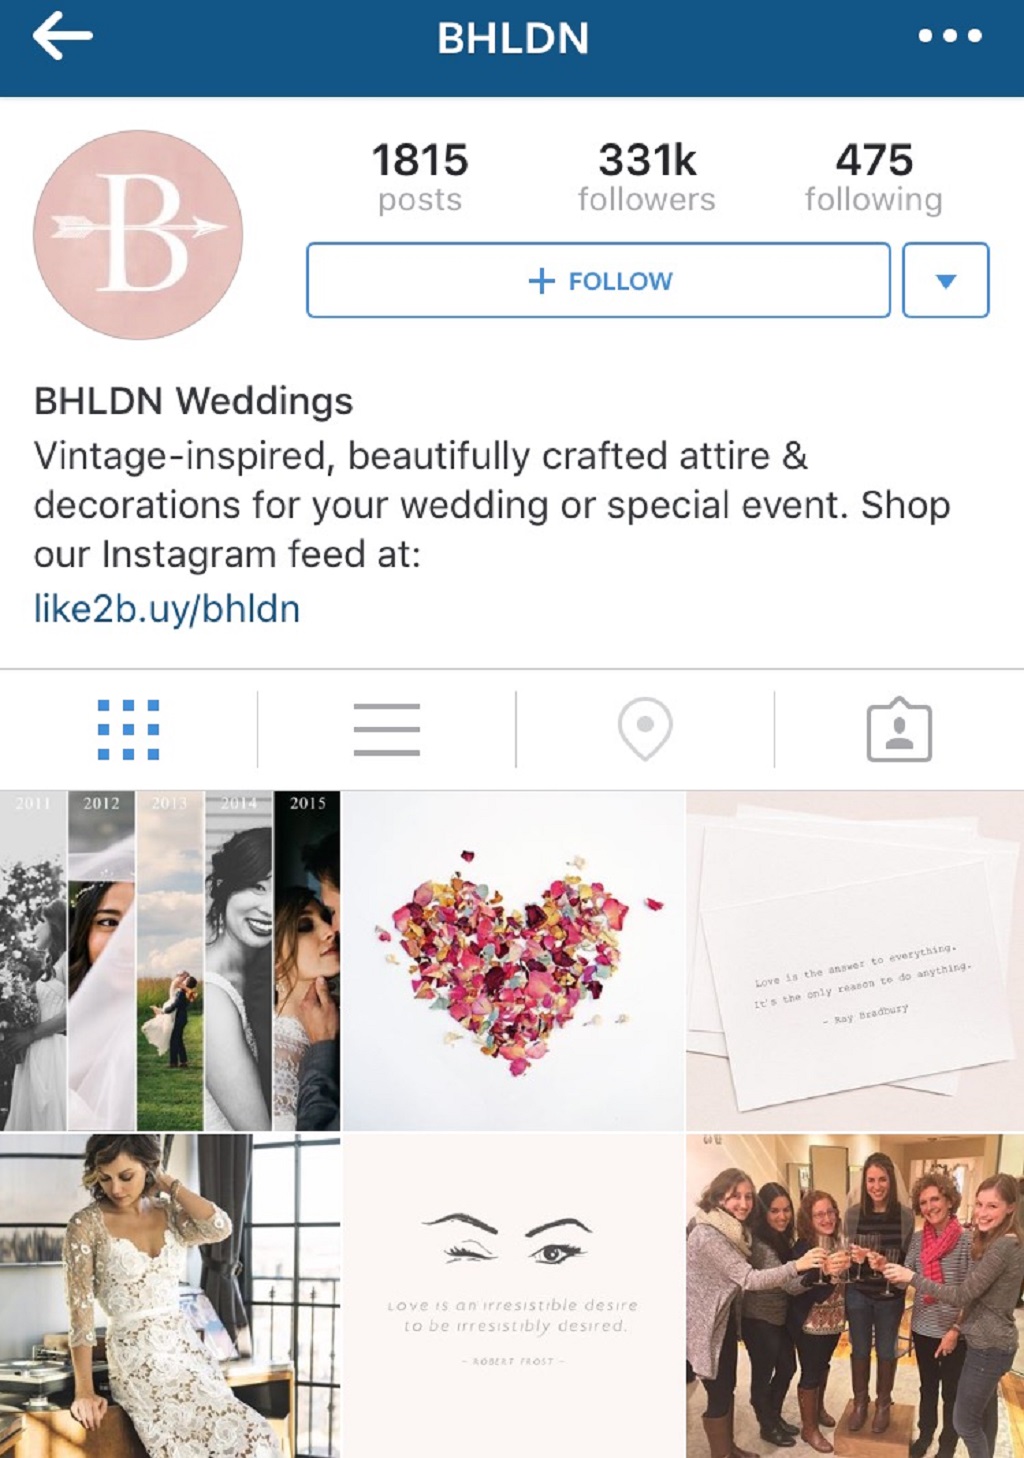 How to Congratulate a Wedding on Social Media
